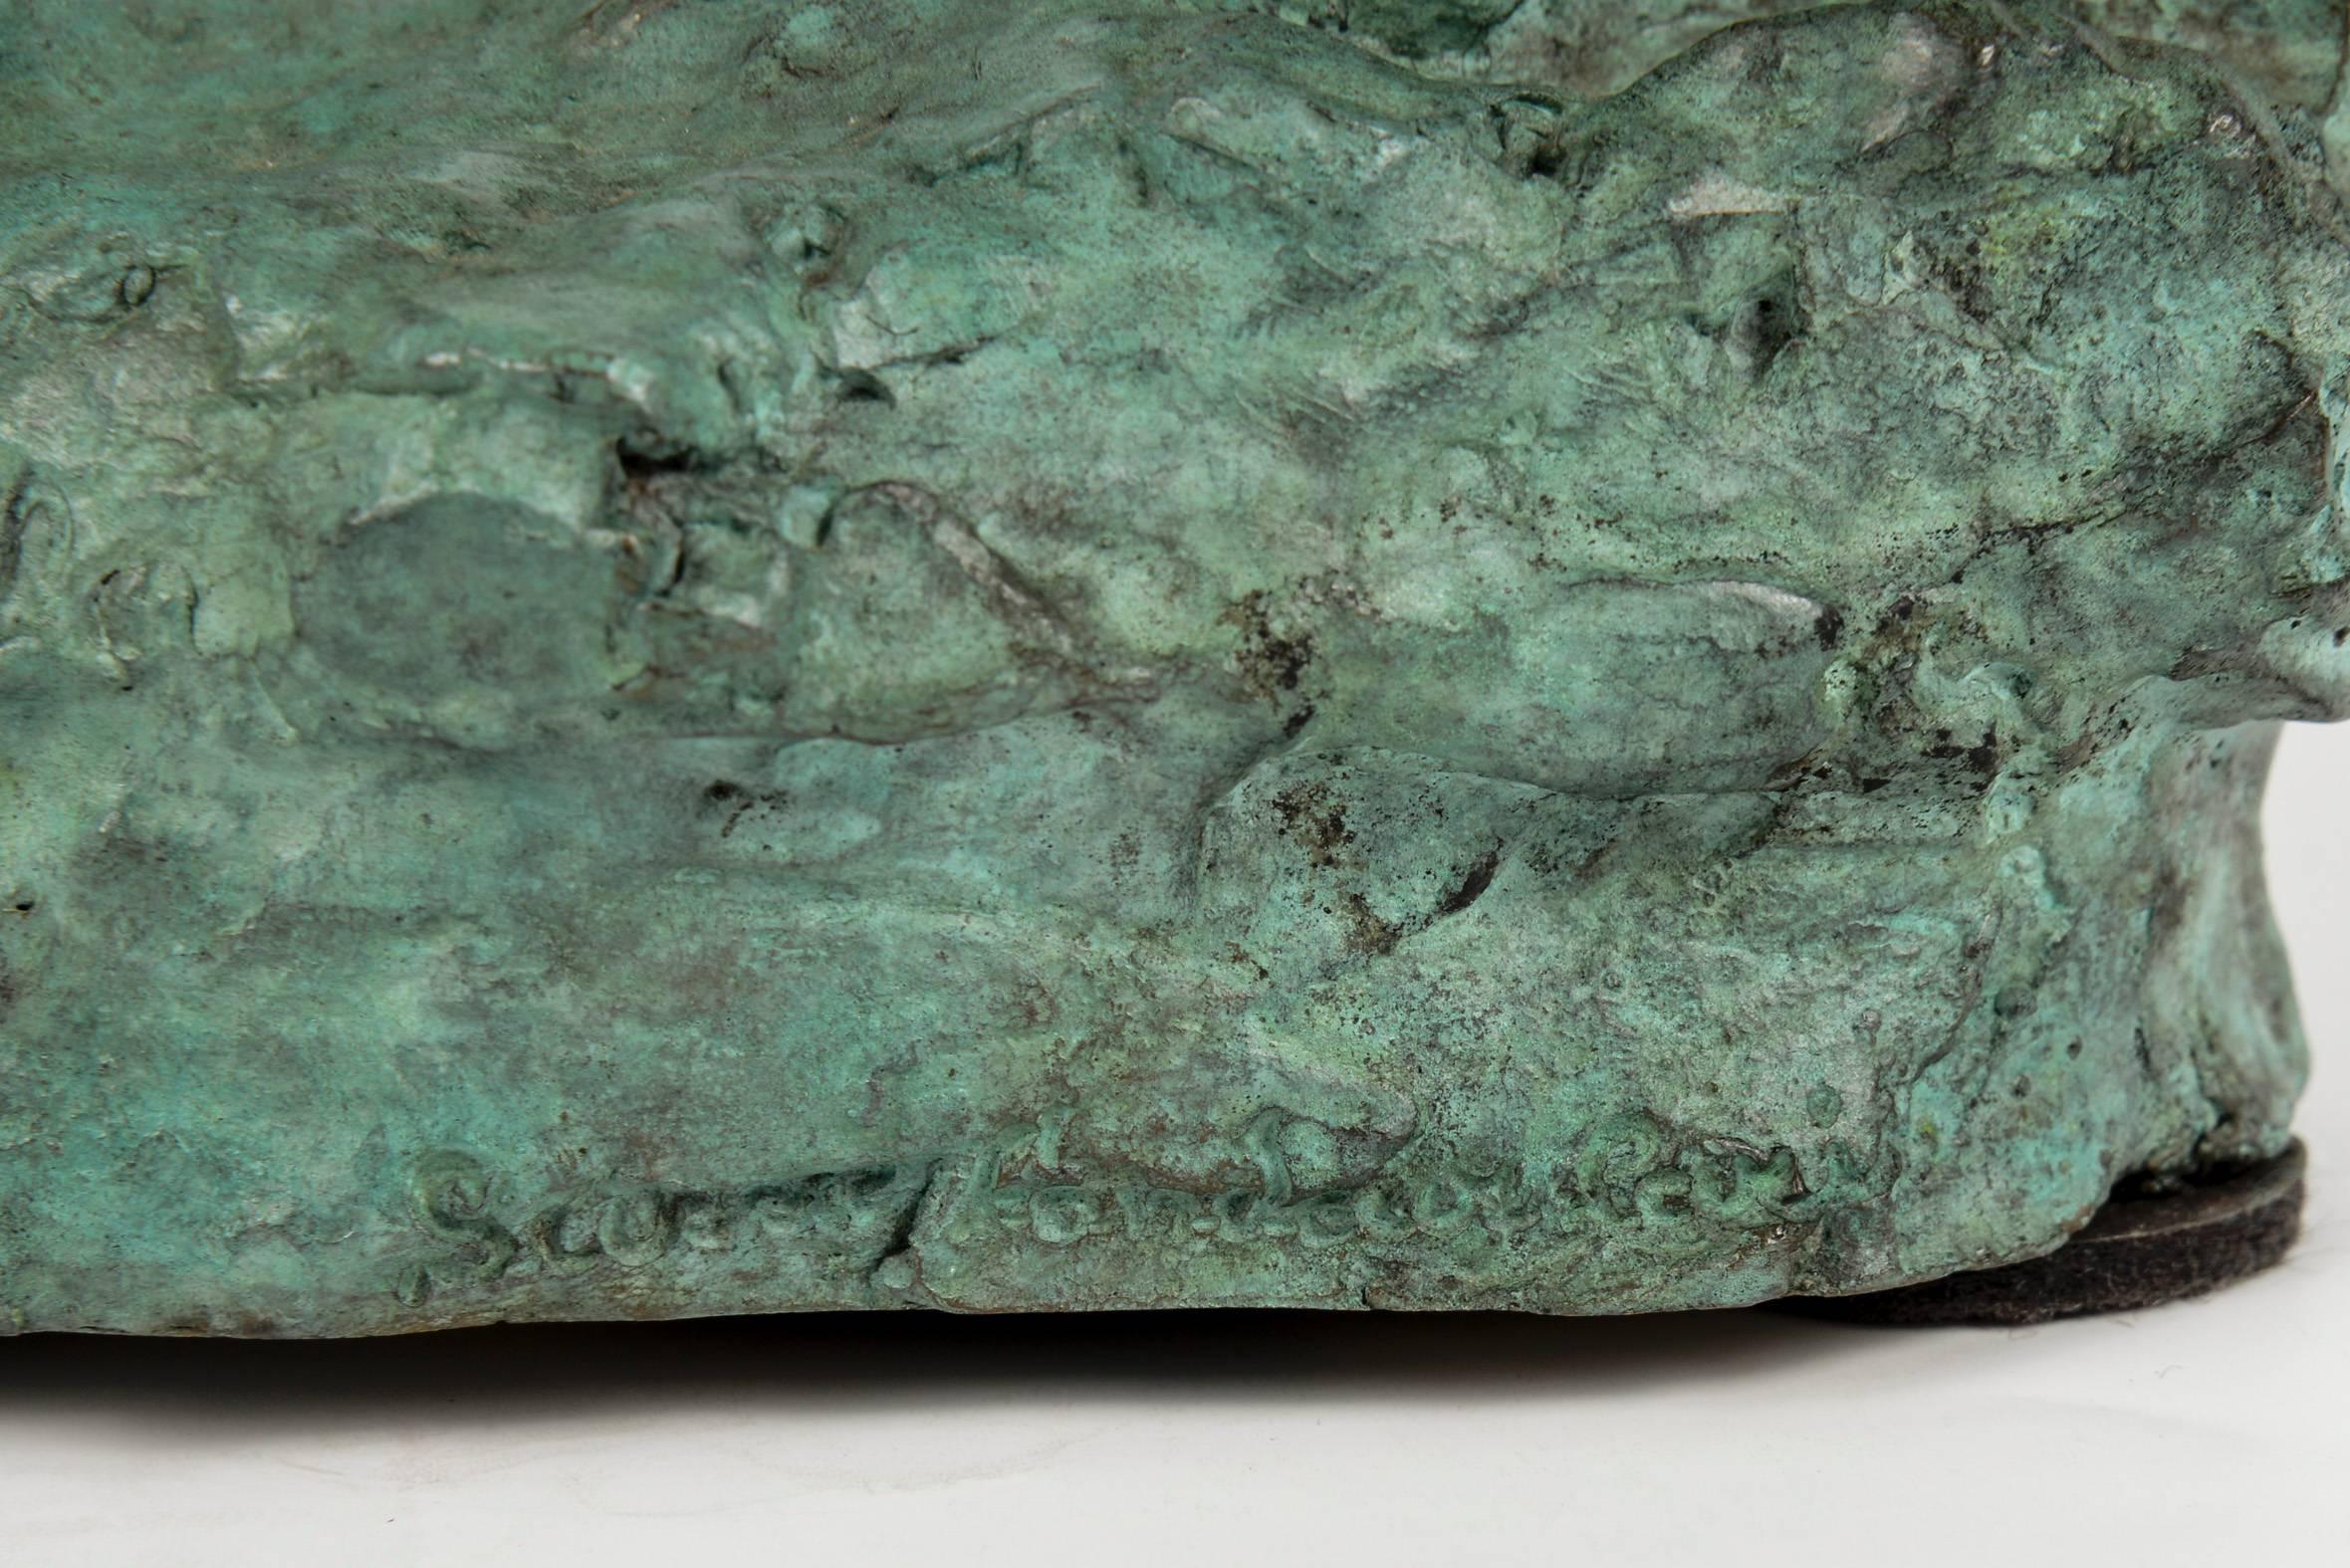 Bronze couple, with original antique green patina by Germaine Nordmann,
Ecole de Paris,
Susse Fondeur,
circa 1940.
Signed and numbered.
Measurements:
Man height 35 cm x width 17 cm x depth 8 cm.
Woman height 32 cm x width 12 cm x depth 7 cm.